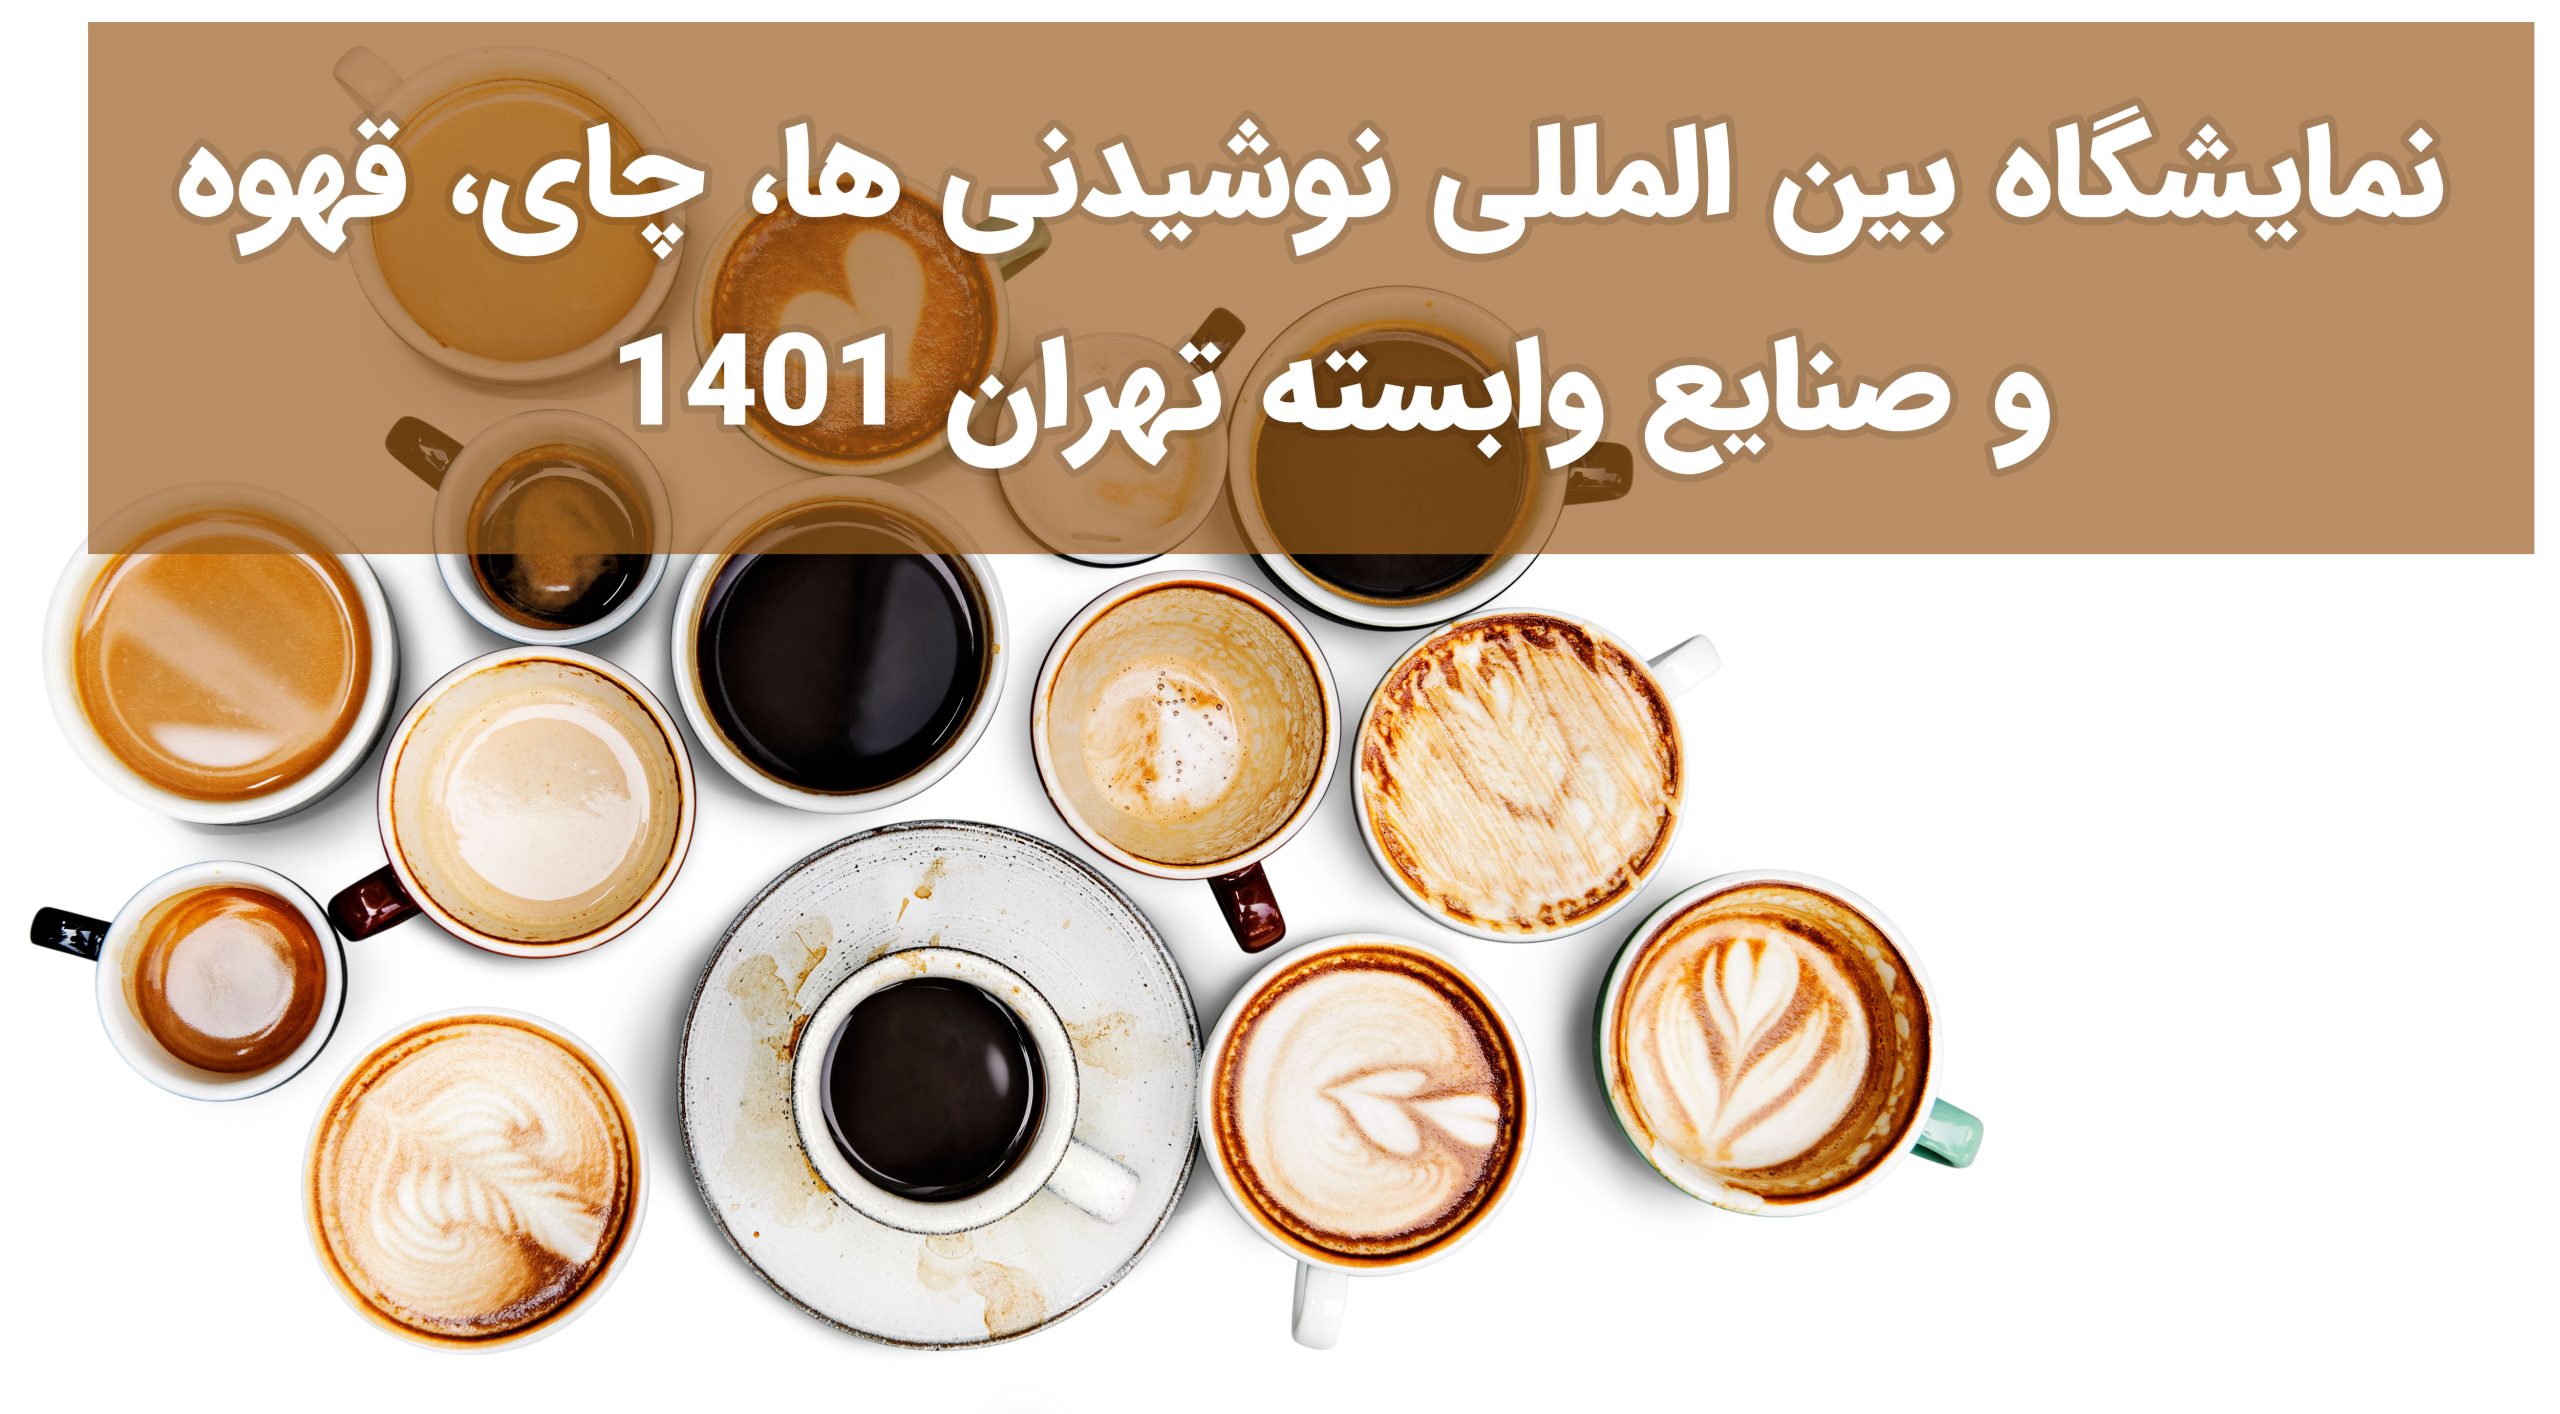 نمایشگاه بین المللی نوشیدنی ها، چای، قهوه و صنایع وابسته تهران 1401